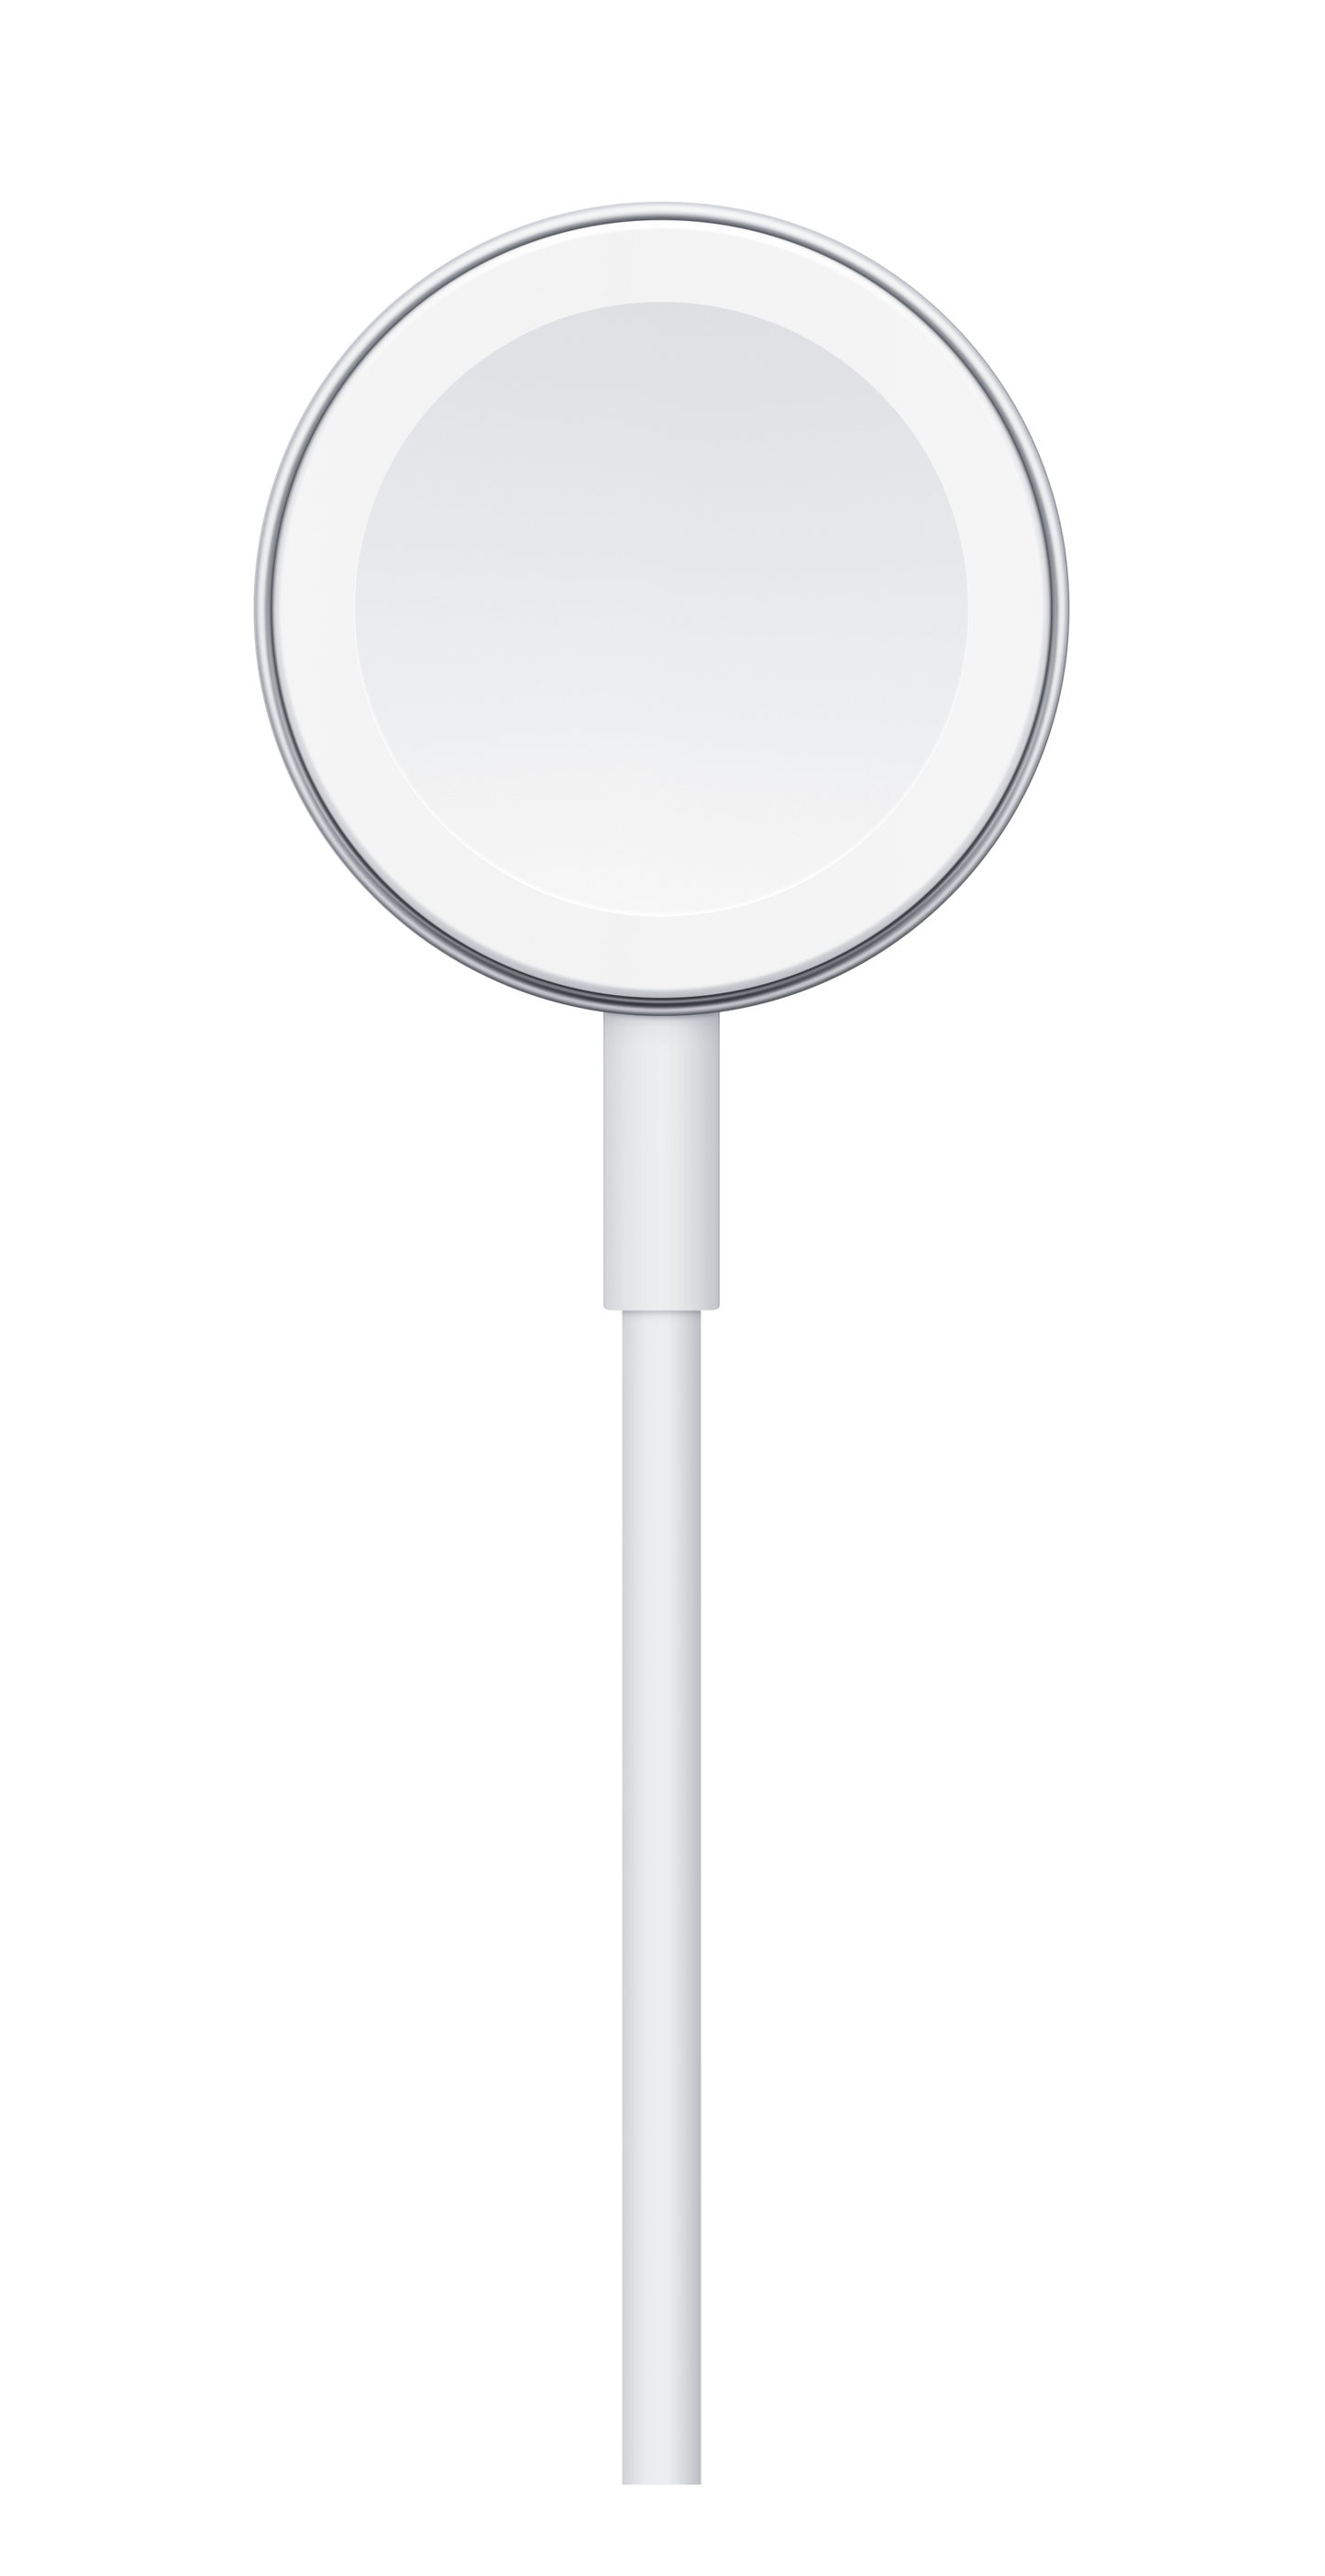 Cable de carga magnética para el Apple Watch (2 metros)